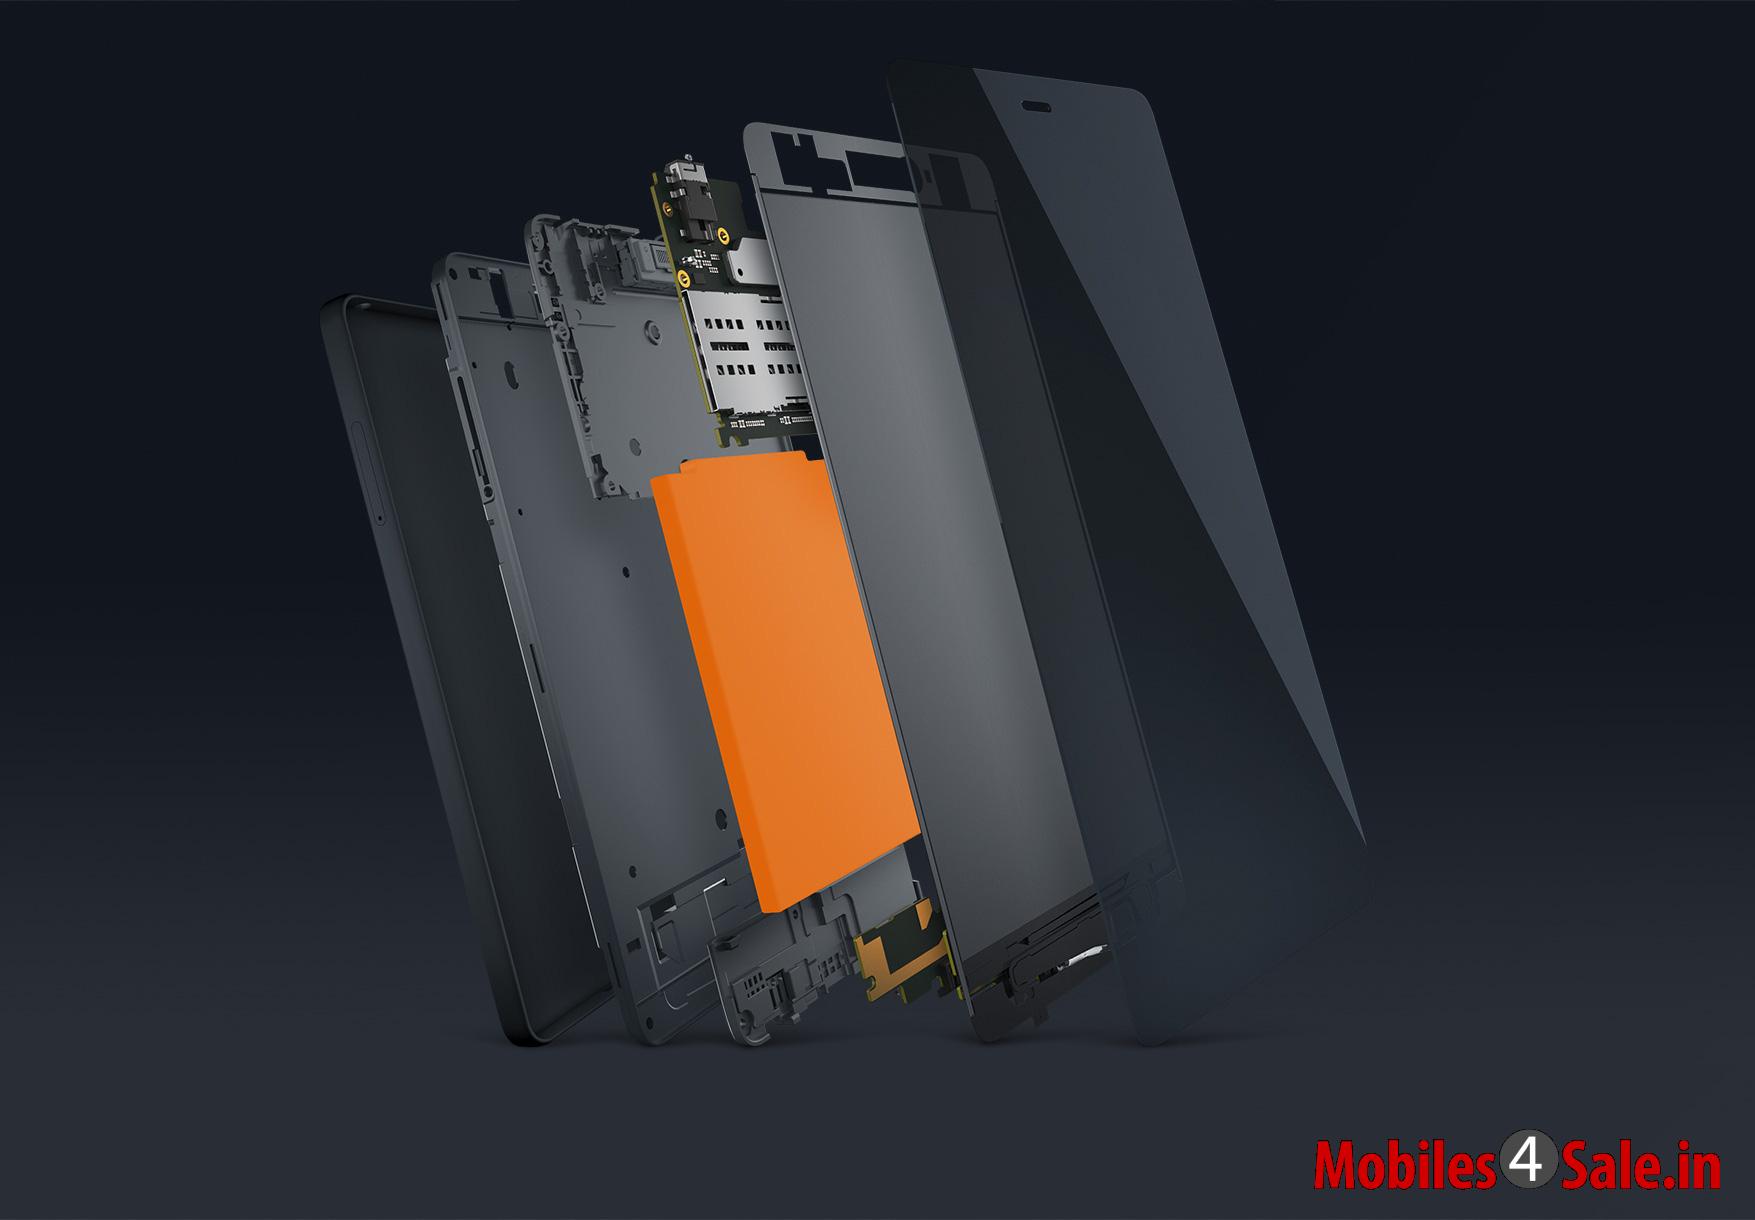 Xiaomi Mi 4i Pic 5